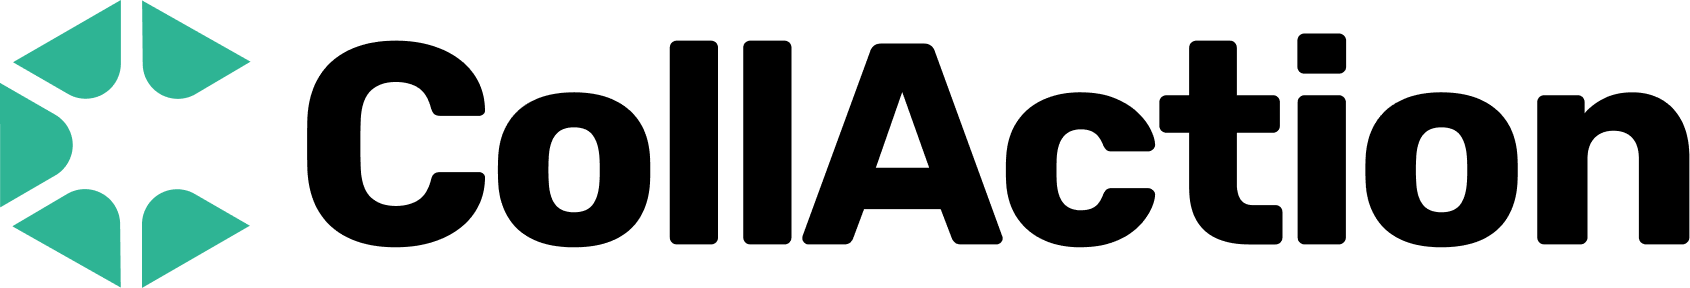 CollAction logo